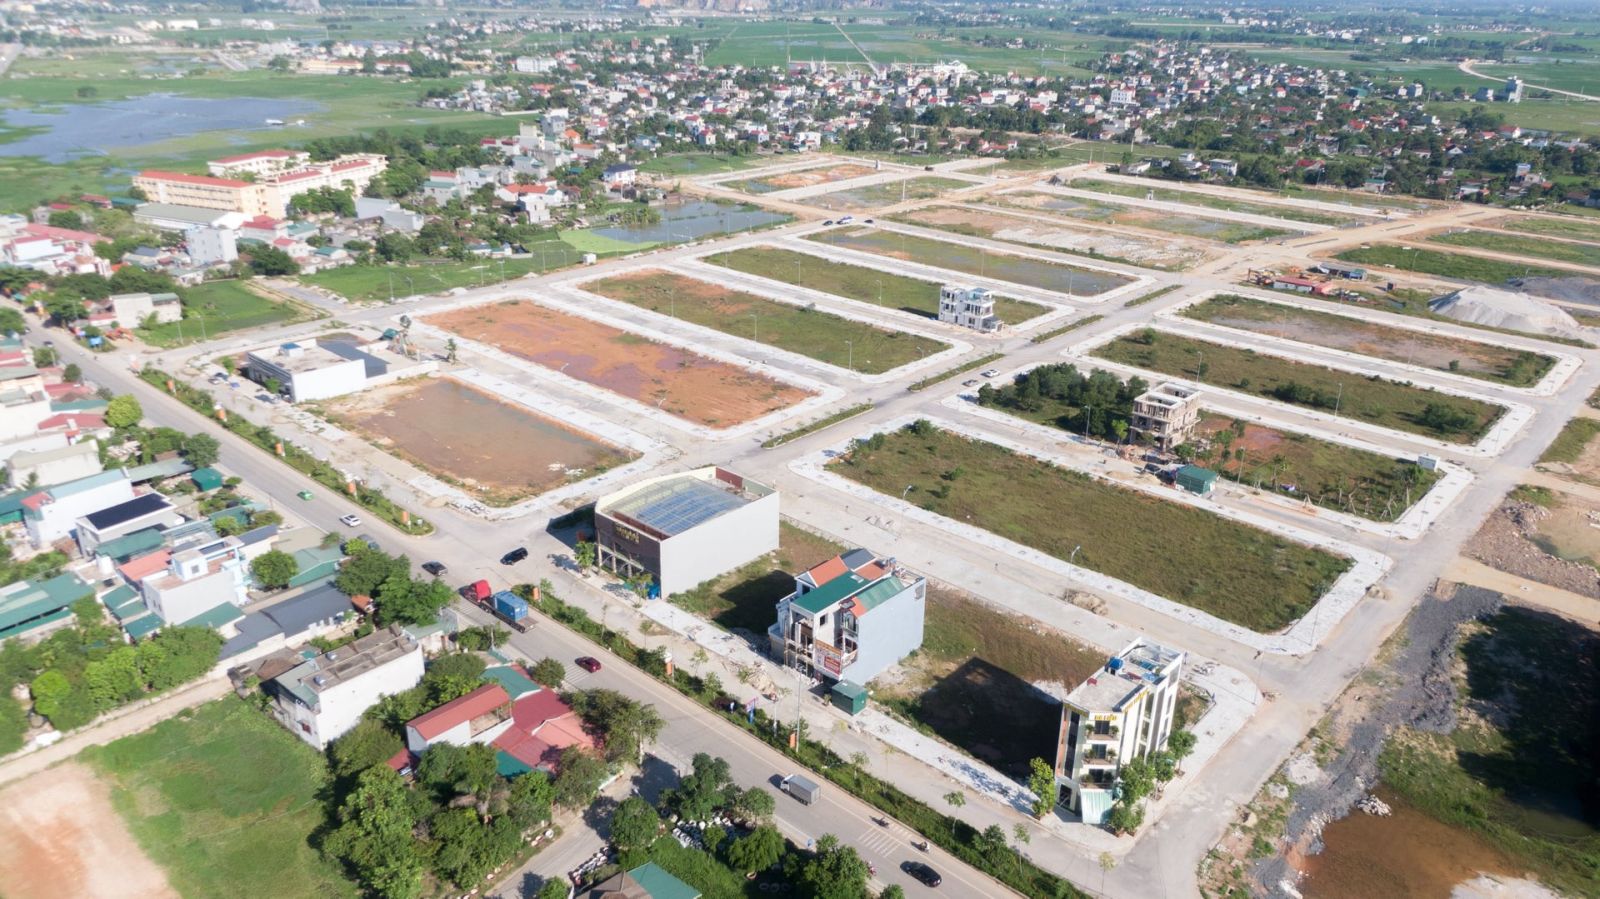 UBND tỉnh Thanh Hoá vừa ban hành Công văn số 4905 chỉ đạo các cơ quan, đơn vị có liên quan tăng cường công tác rà soát, kiểm tra các cuộc đấu giá quyền sử dụng đất trên địa bàn.